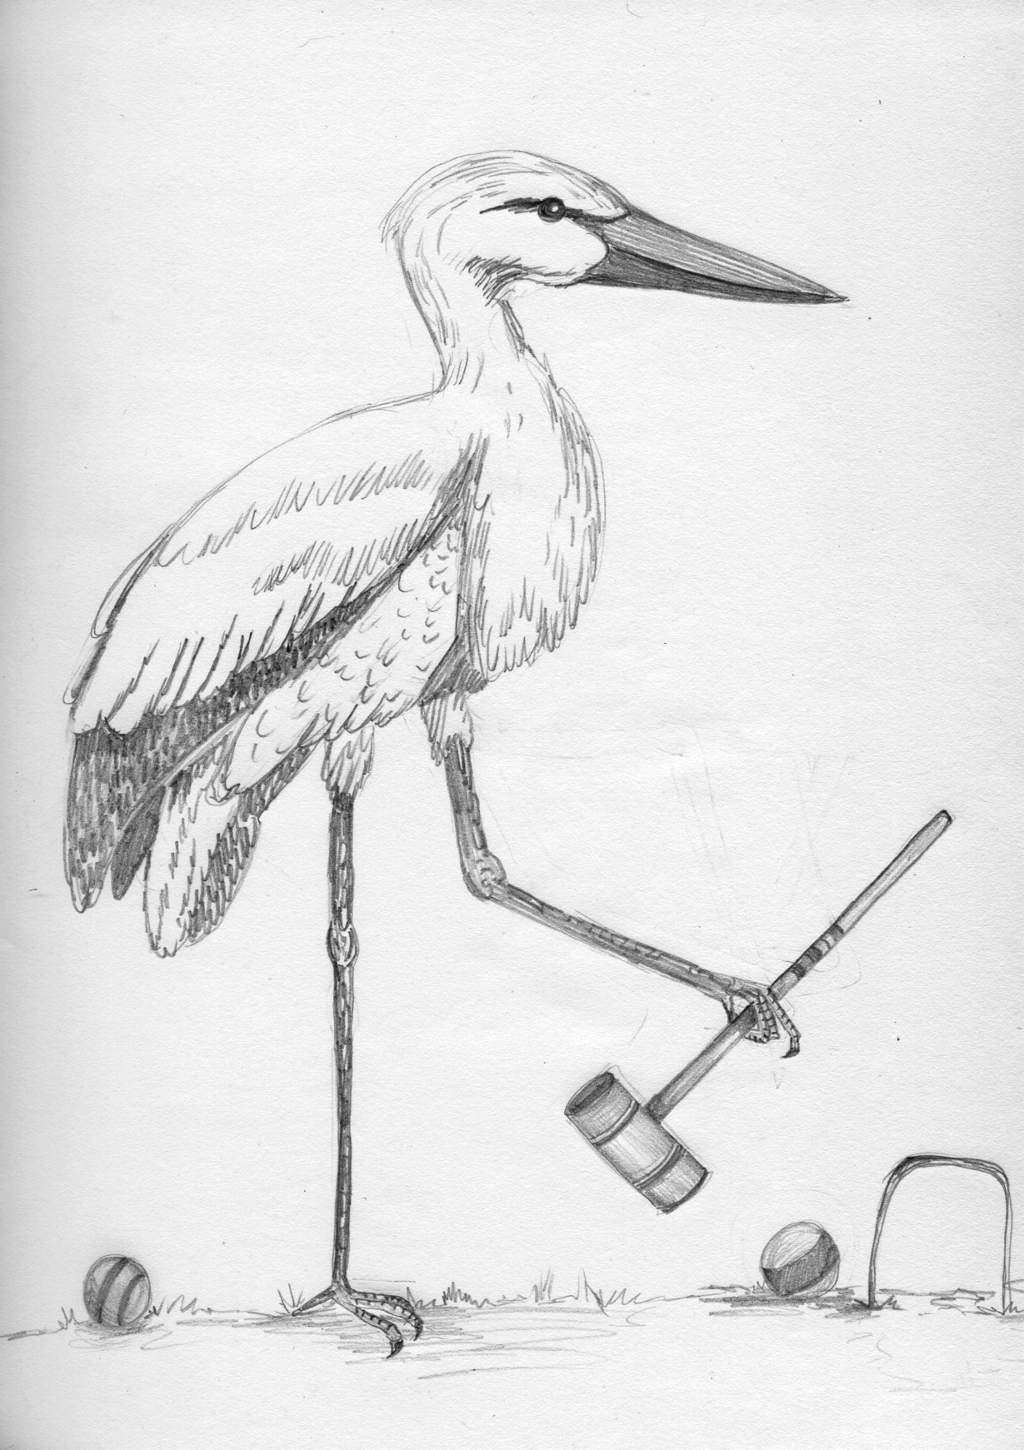 A stork holding a croquet mallet